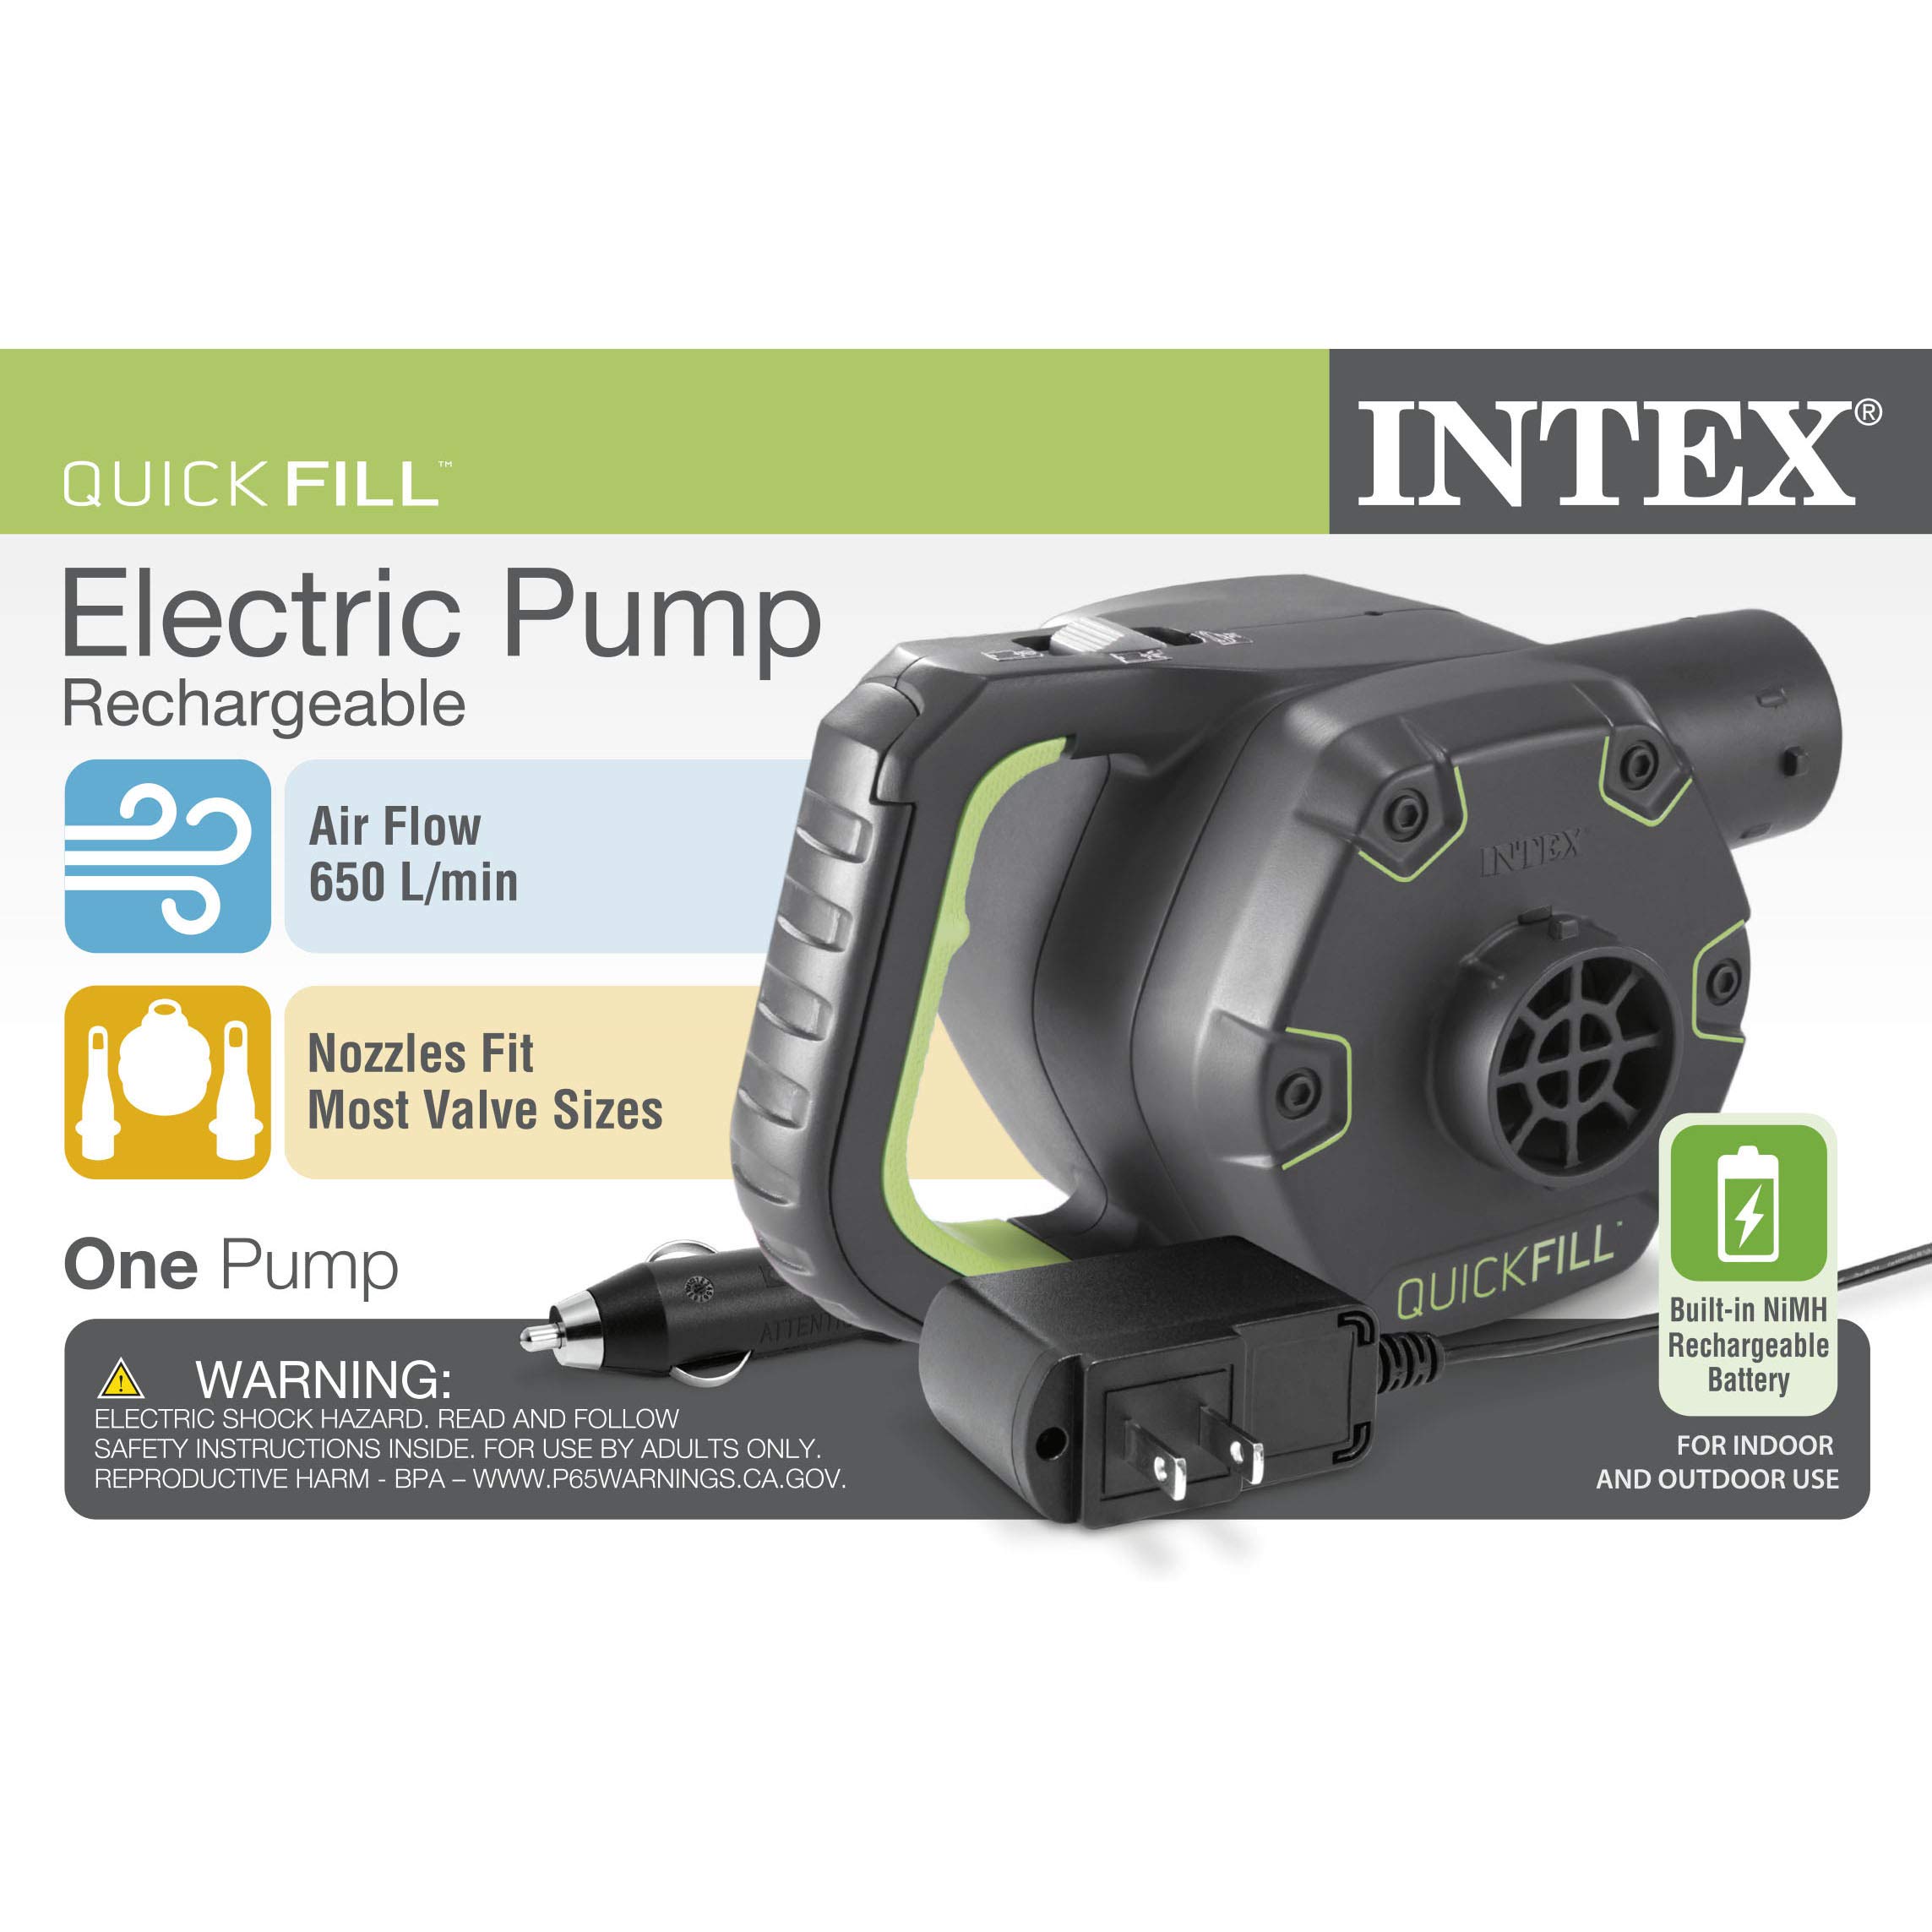 Intex Quick-Fill Rechargeable Air Pump, 110-120V, Max. Air Flow 650 L/min